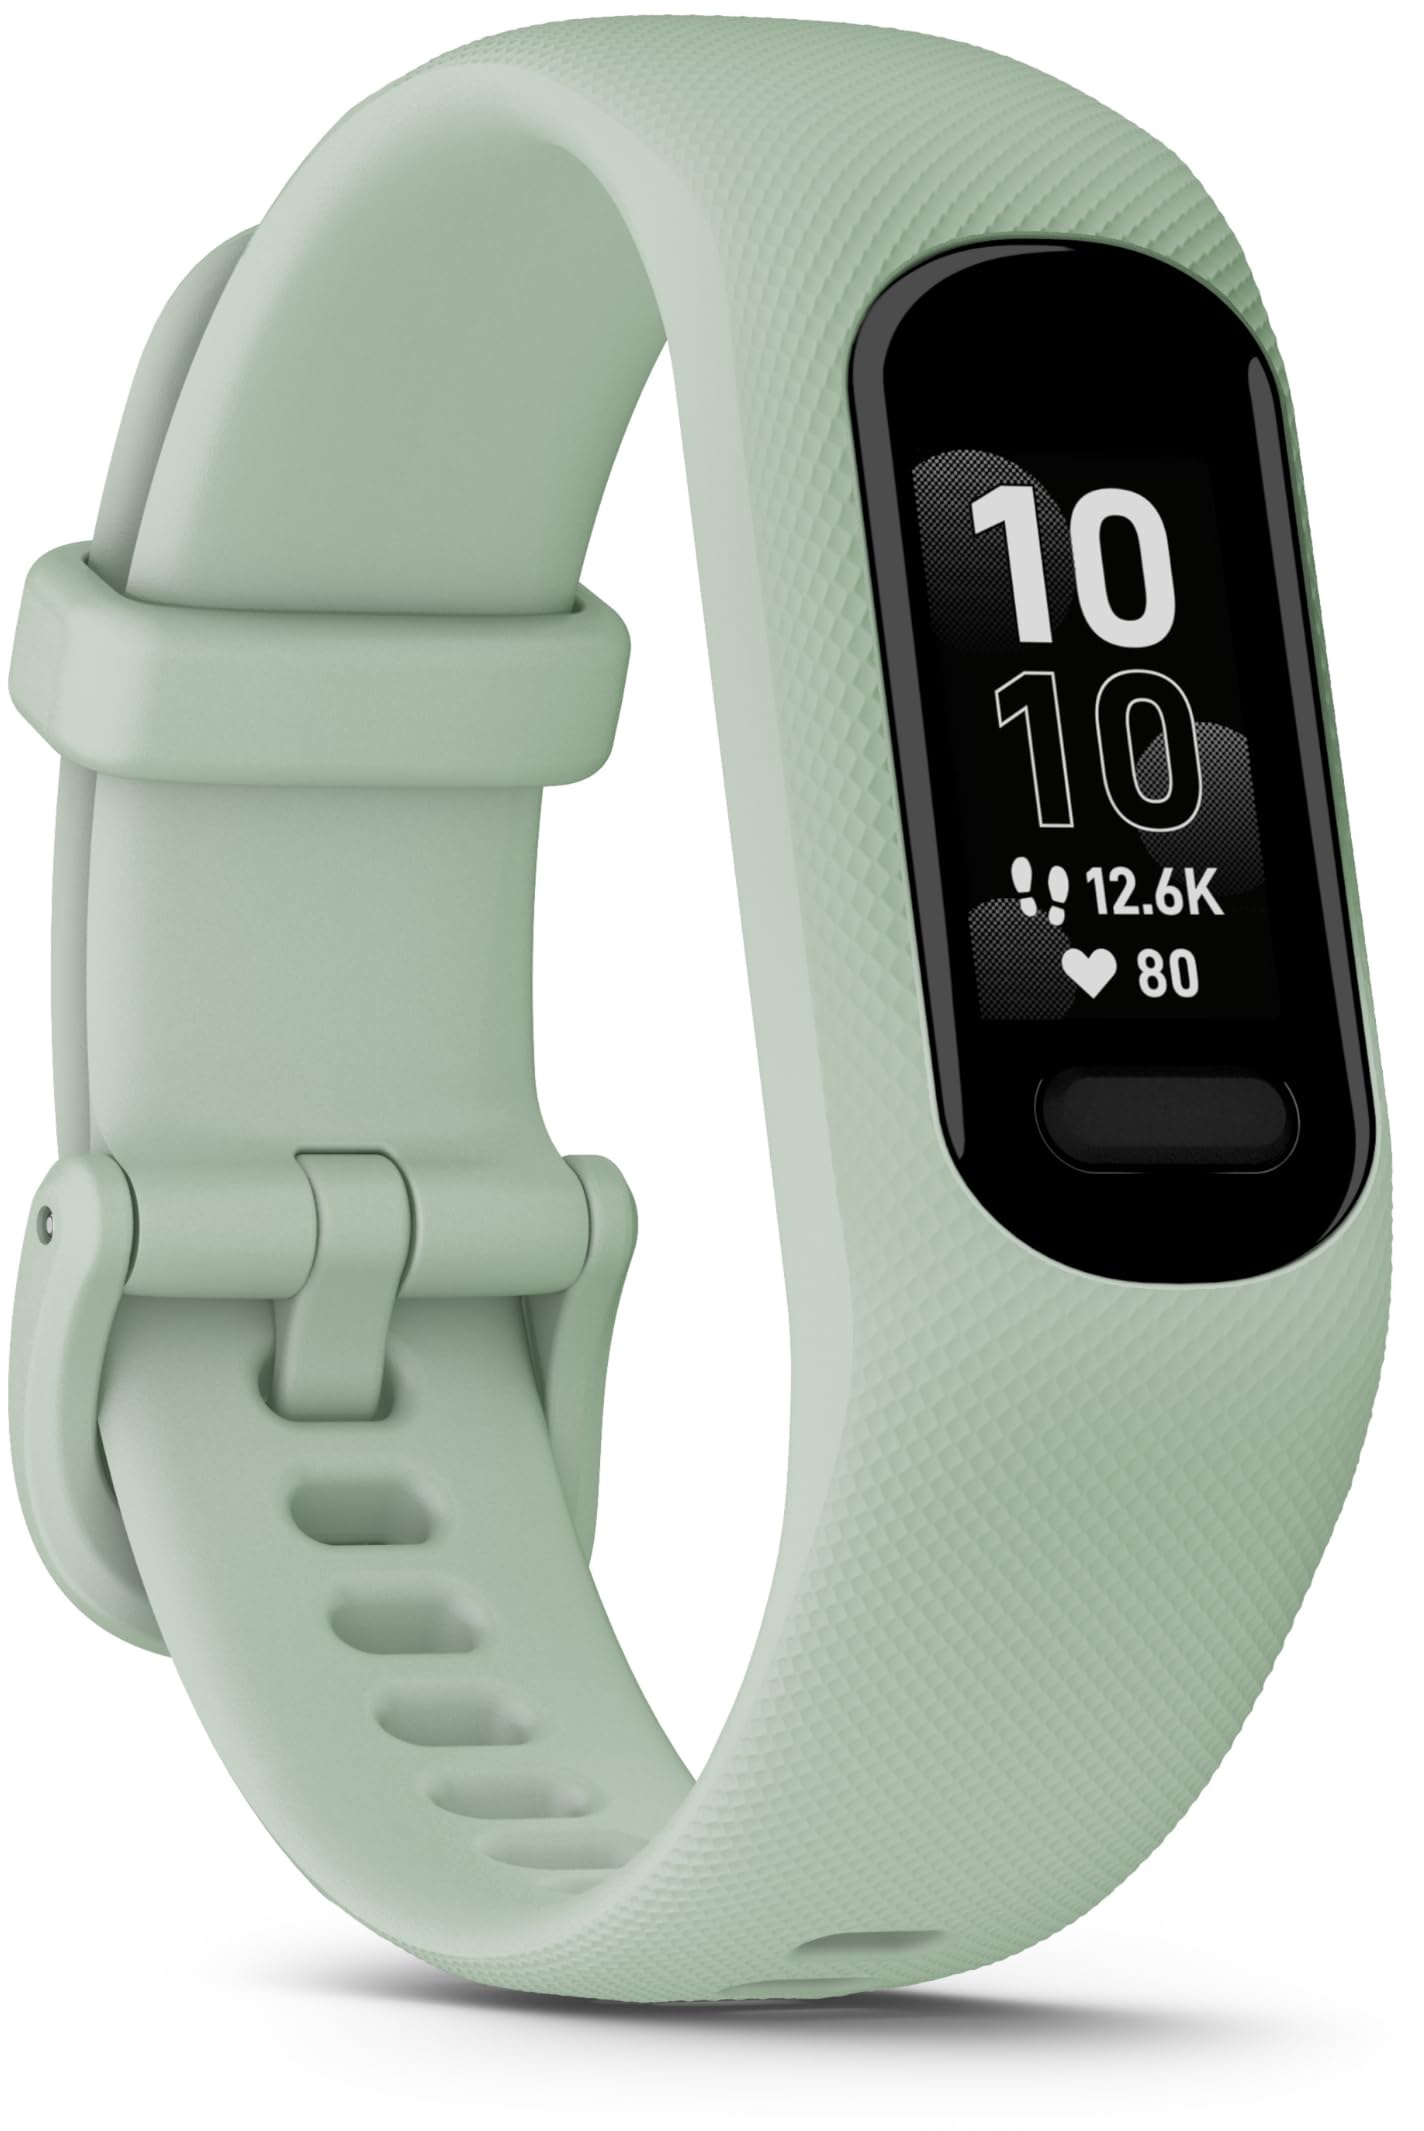 Garmin vívosmart 5 – Fitness-Tracker mit extragroßem OLED-Touchdisplay, Gesundheitsfunktion wie Schlafqualität und Herzfrequenzmessung. Bis zu 7 Tage Akkulaufzeit, wasserdicht und Notfallhilfe.